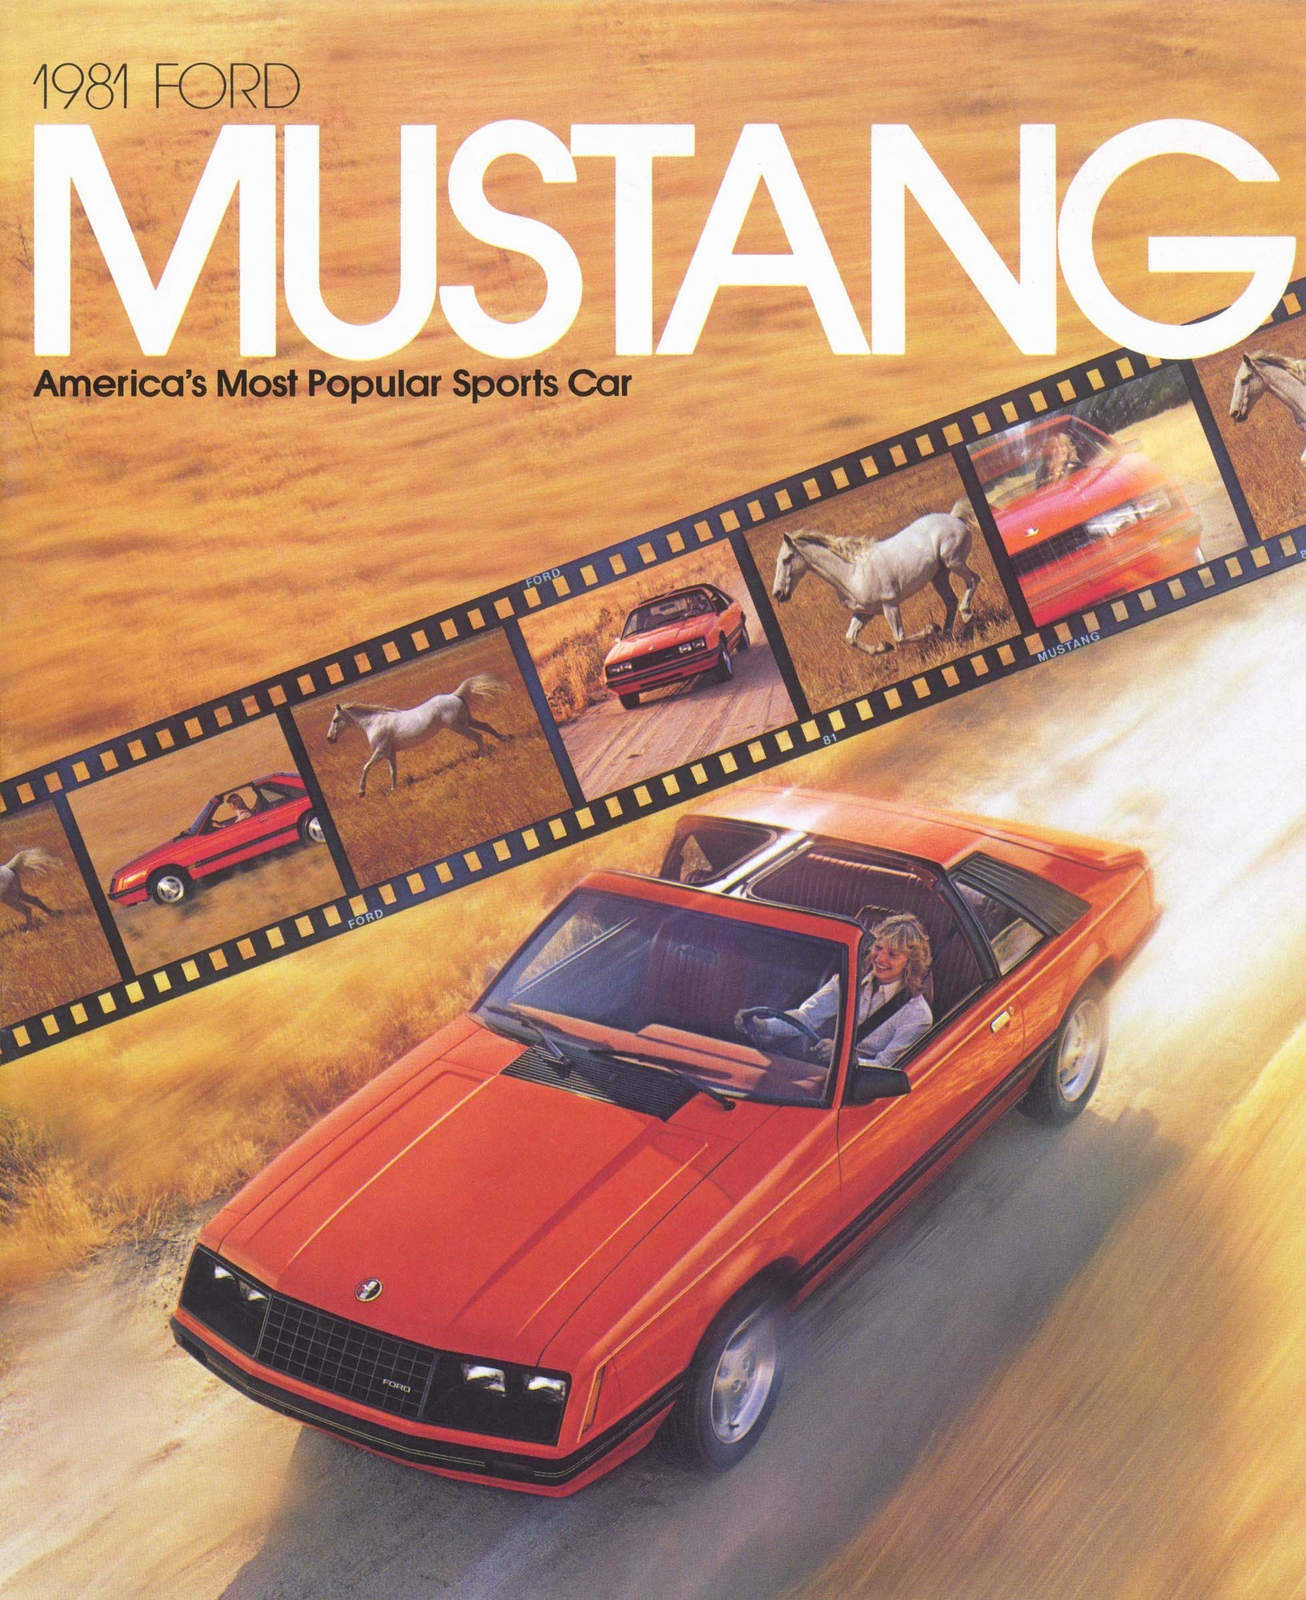 n_1981 Ford Mustang (Rev1)-01.jpg